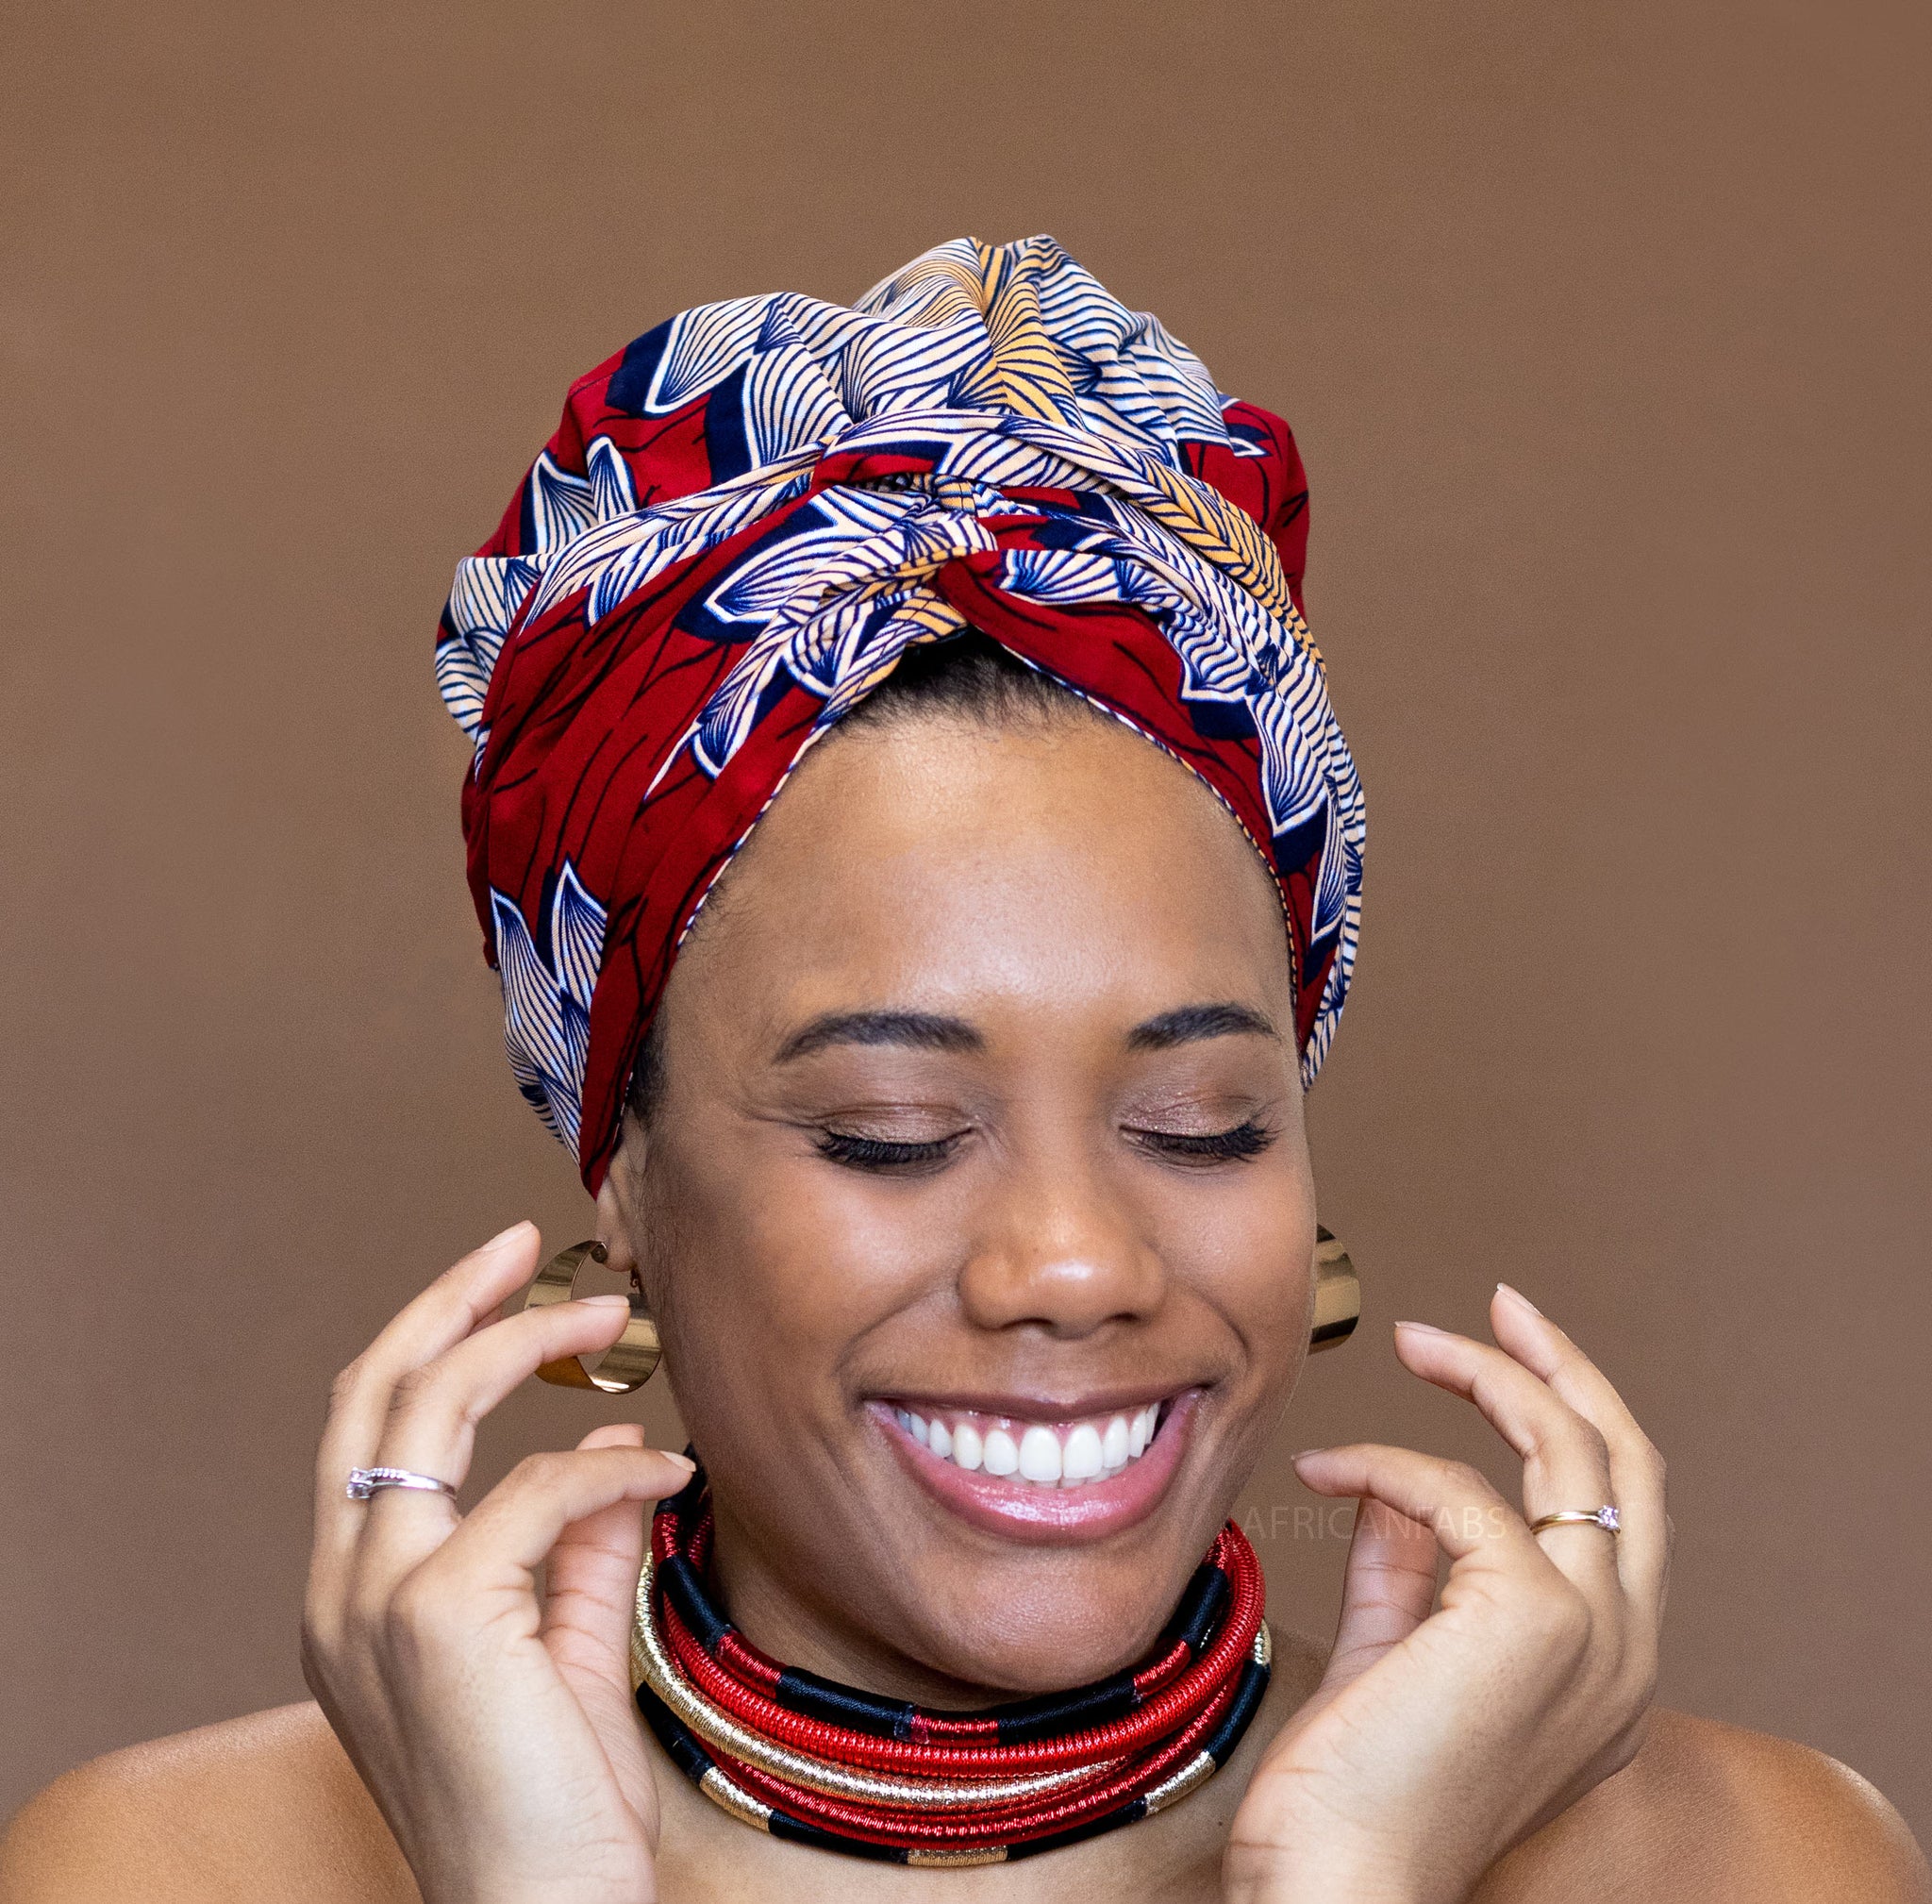 SET SATIN - Protégez vos cheveux et votre peau - Noir Bonnet en Satin –  AfricanFabs